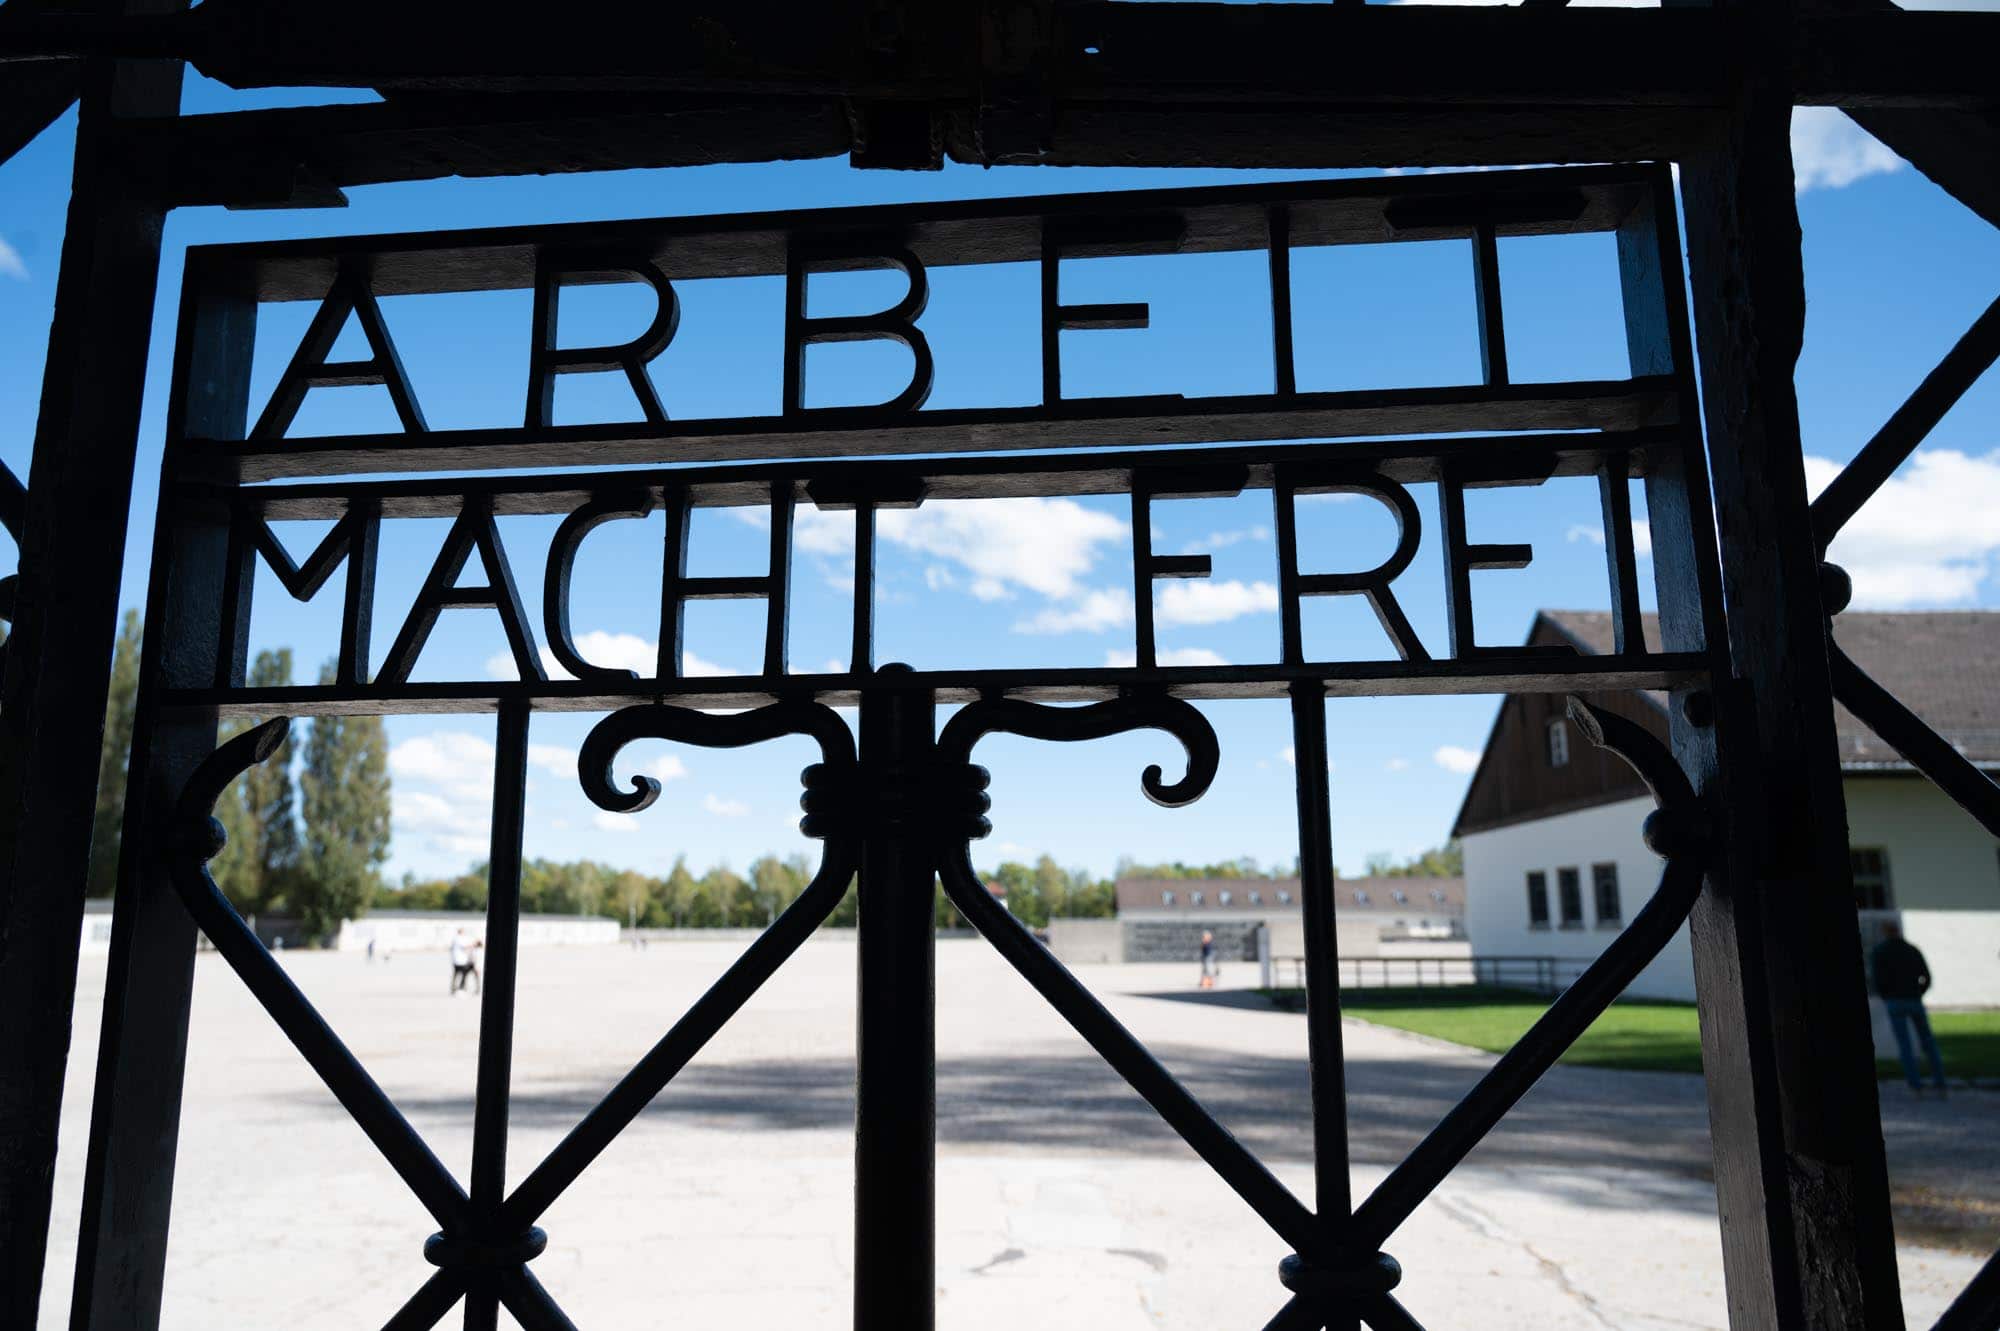 The main entrance to Dachau